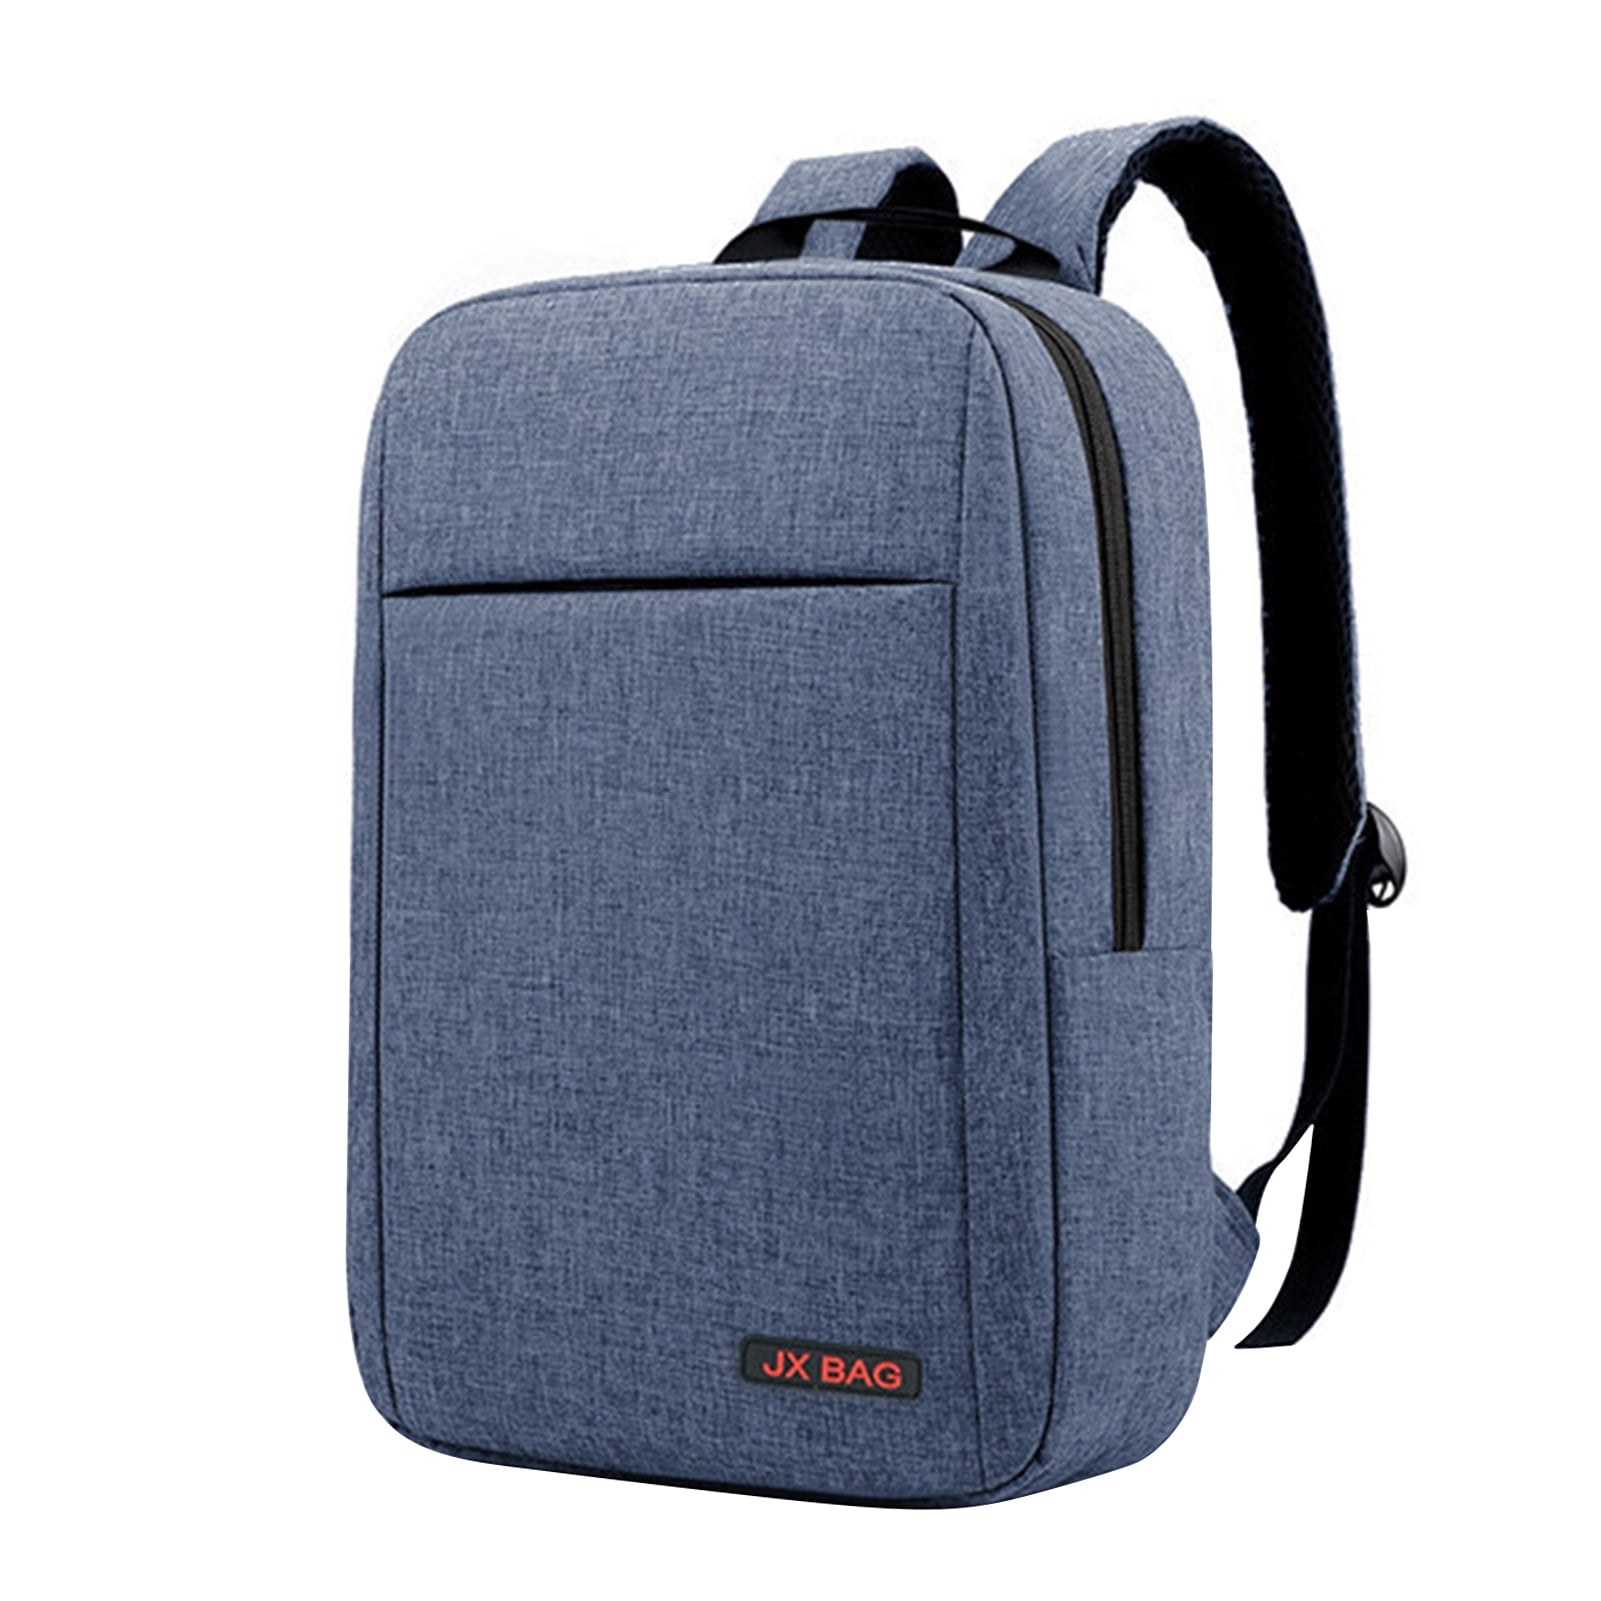 15.6" Men Laptop Backpack Travel Business Messenger Bag School Bookbag 